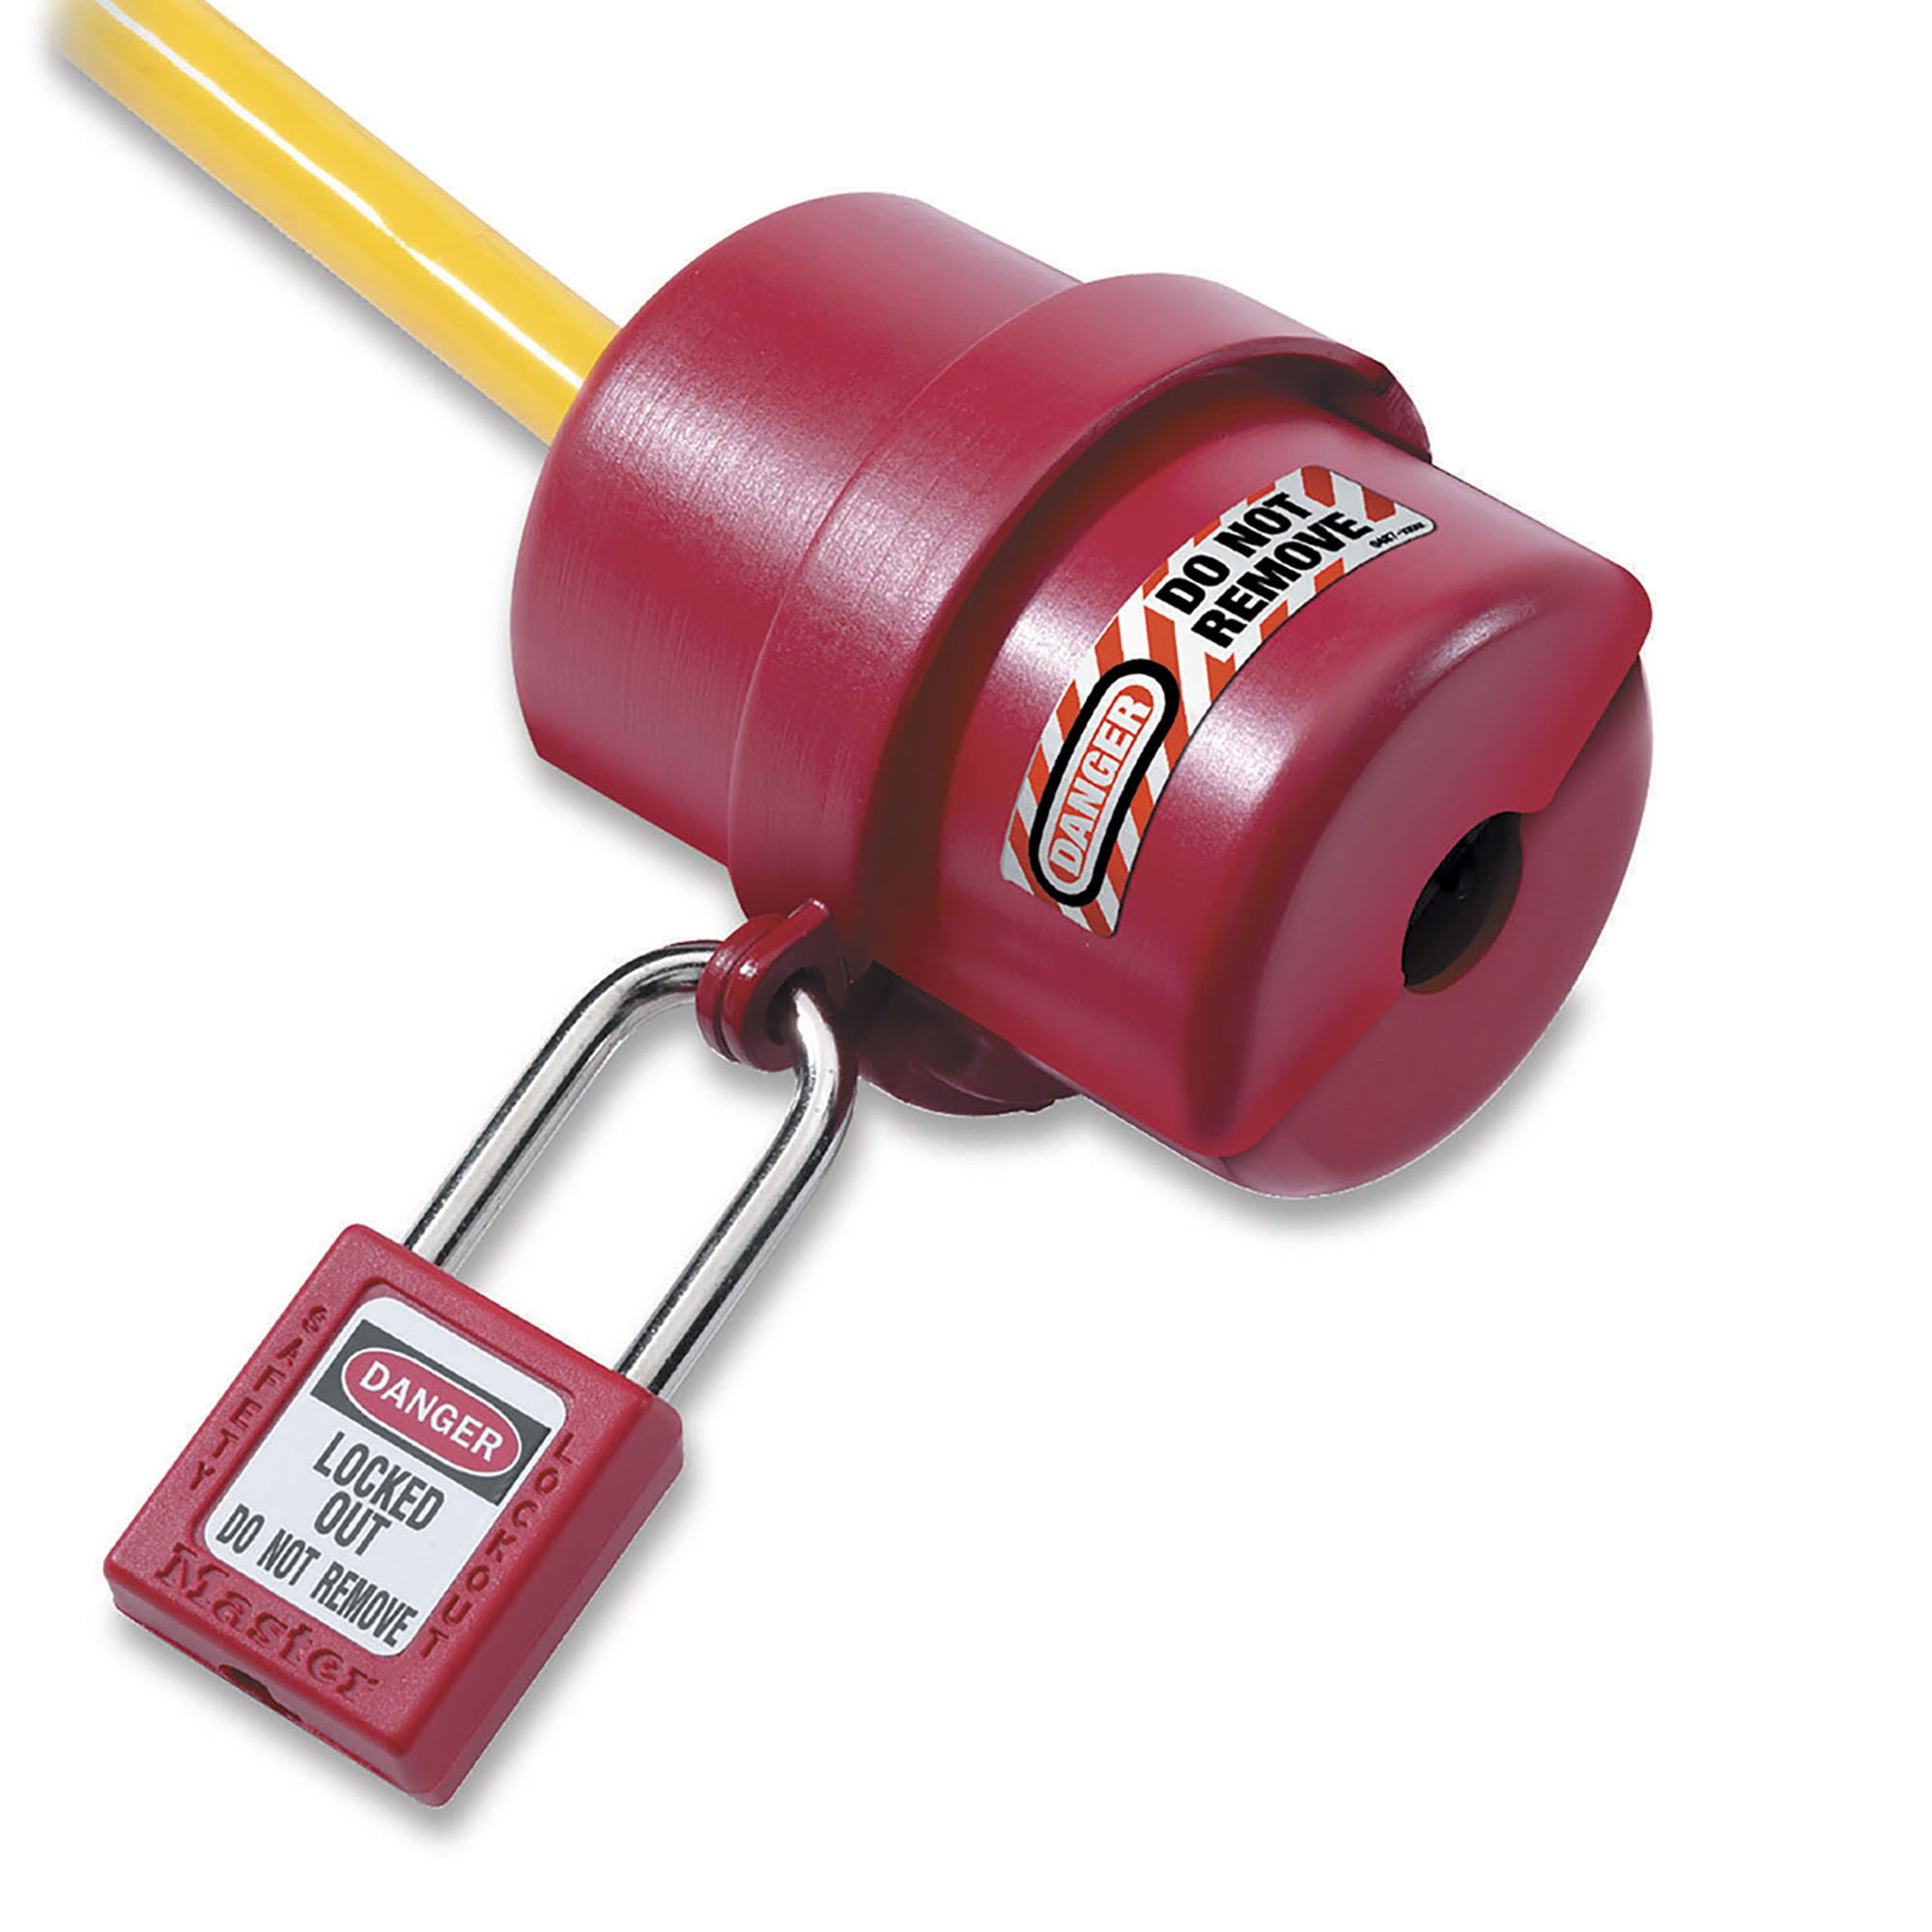 Dispositif de consignation pour prises électriques pour prises de 240 et 550 volts-Master Lock- Preventimark